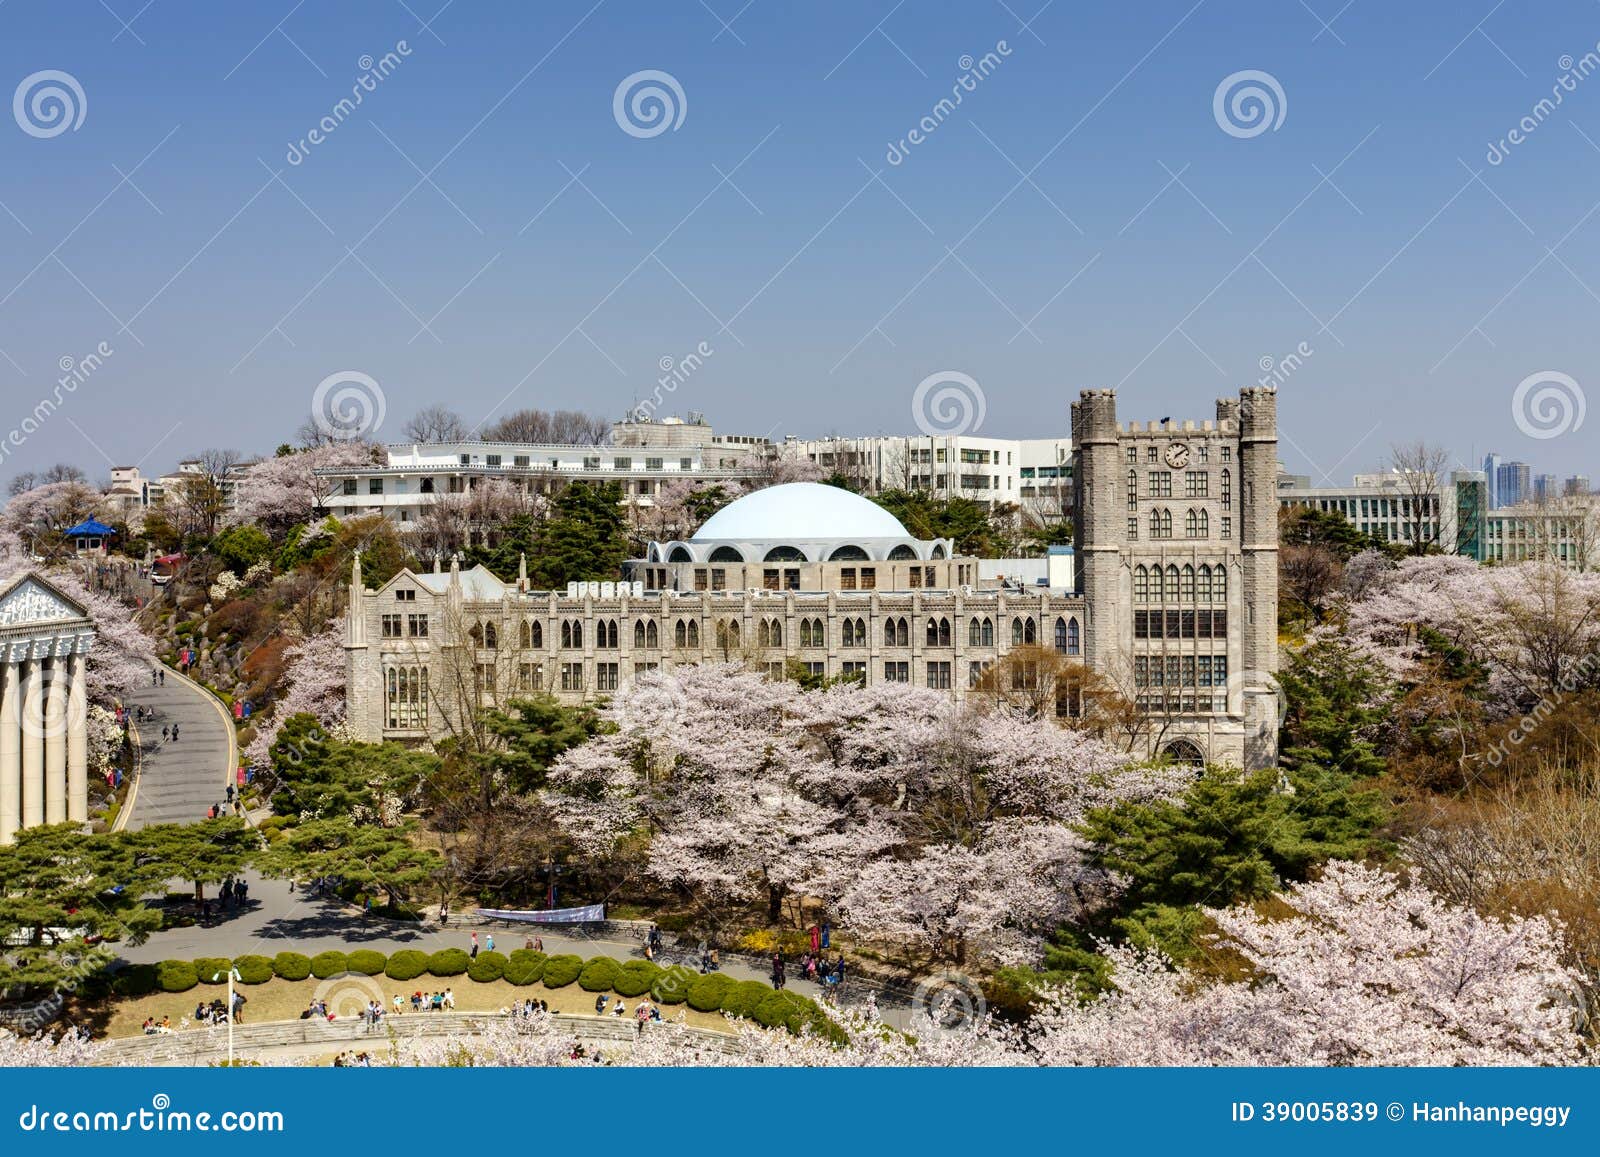 又是一年开学季，盘点中国最美丽的十所大学校园，有你的母校吗_古建筑